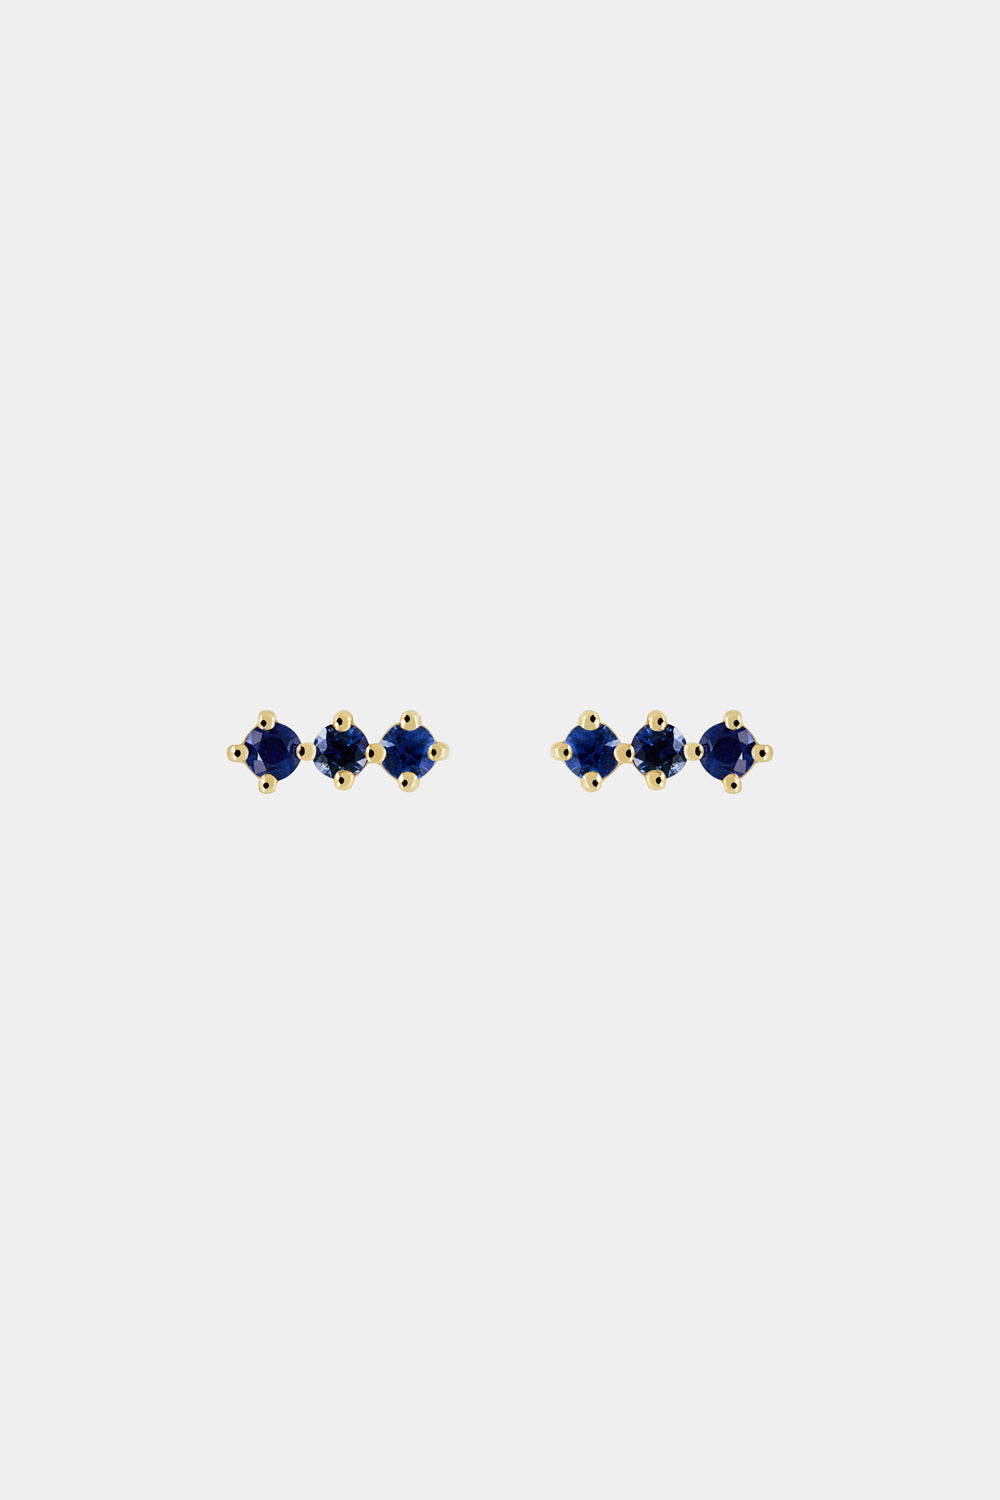 Buttercup Sapphire Bar Earrings | 9K Yellow Gold